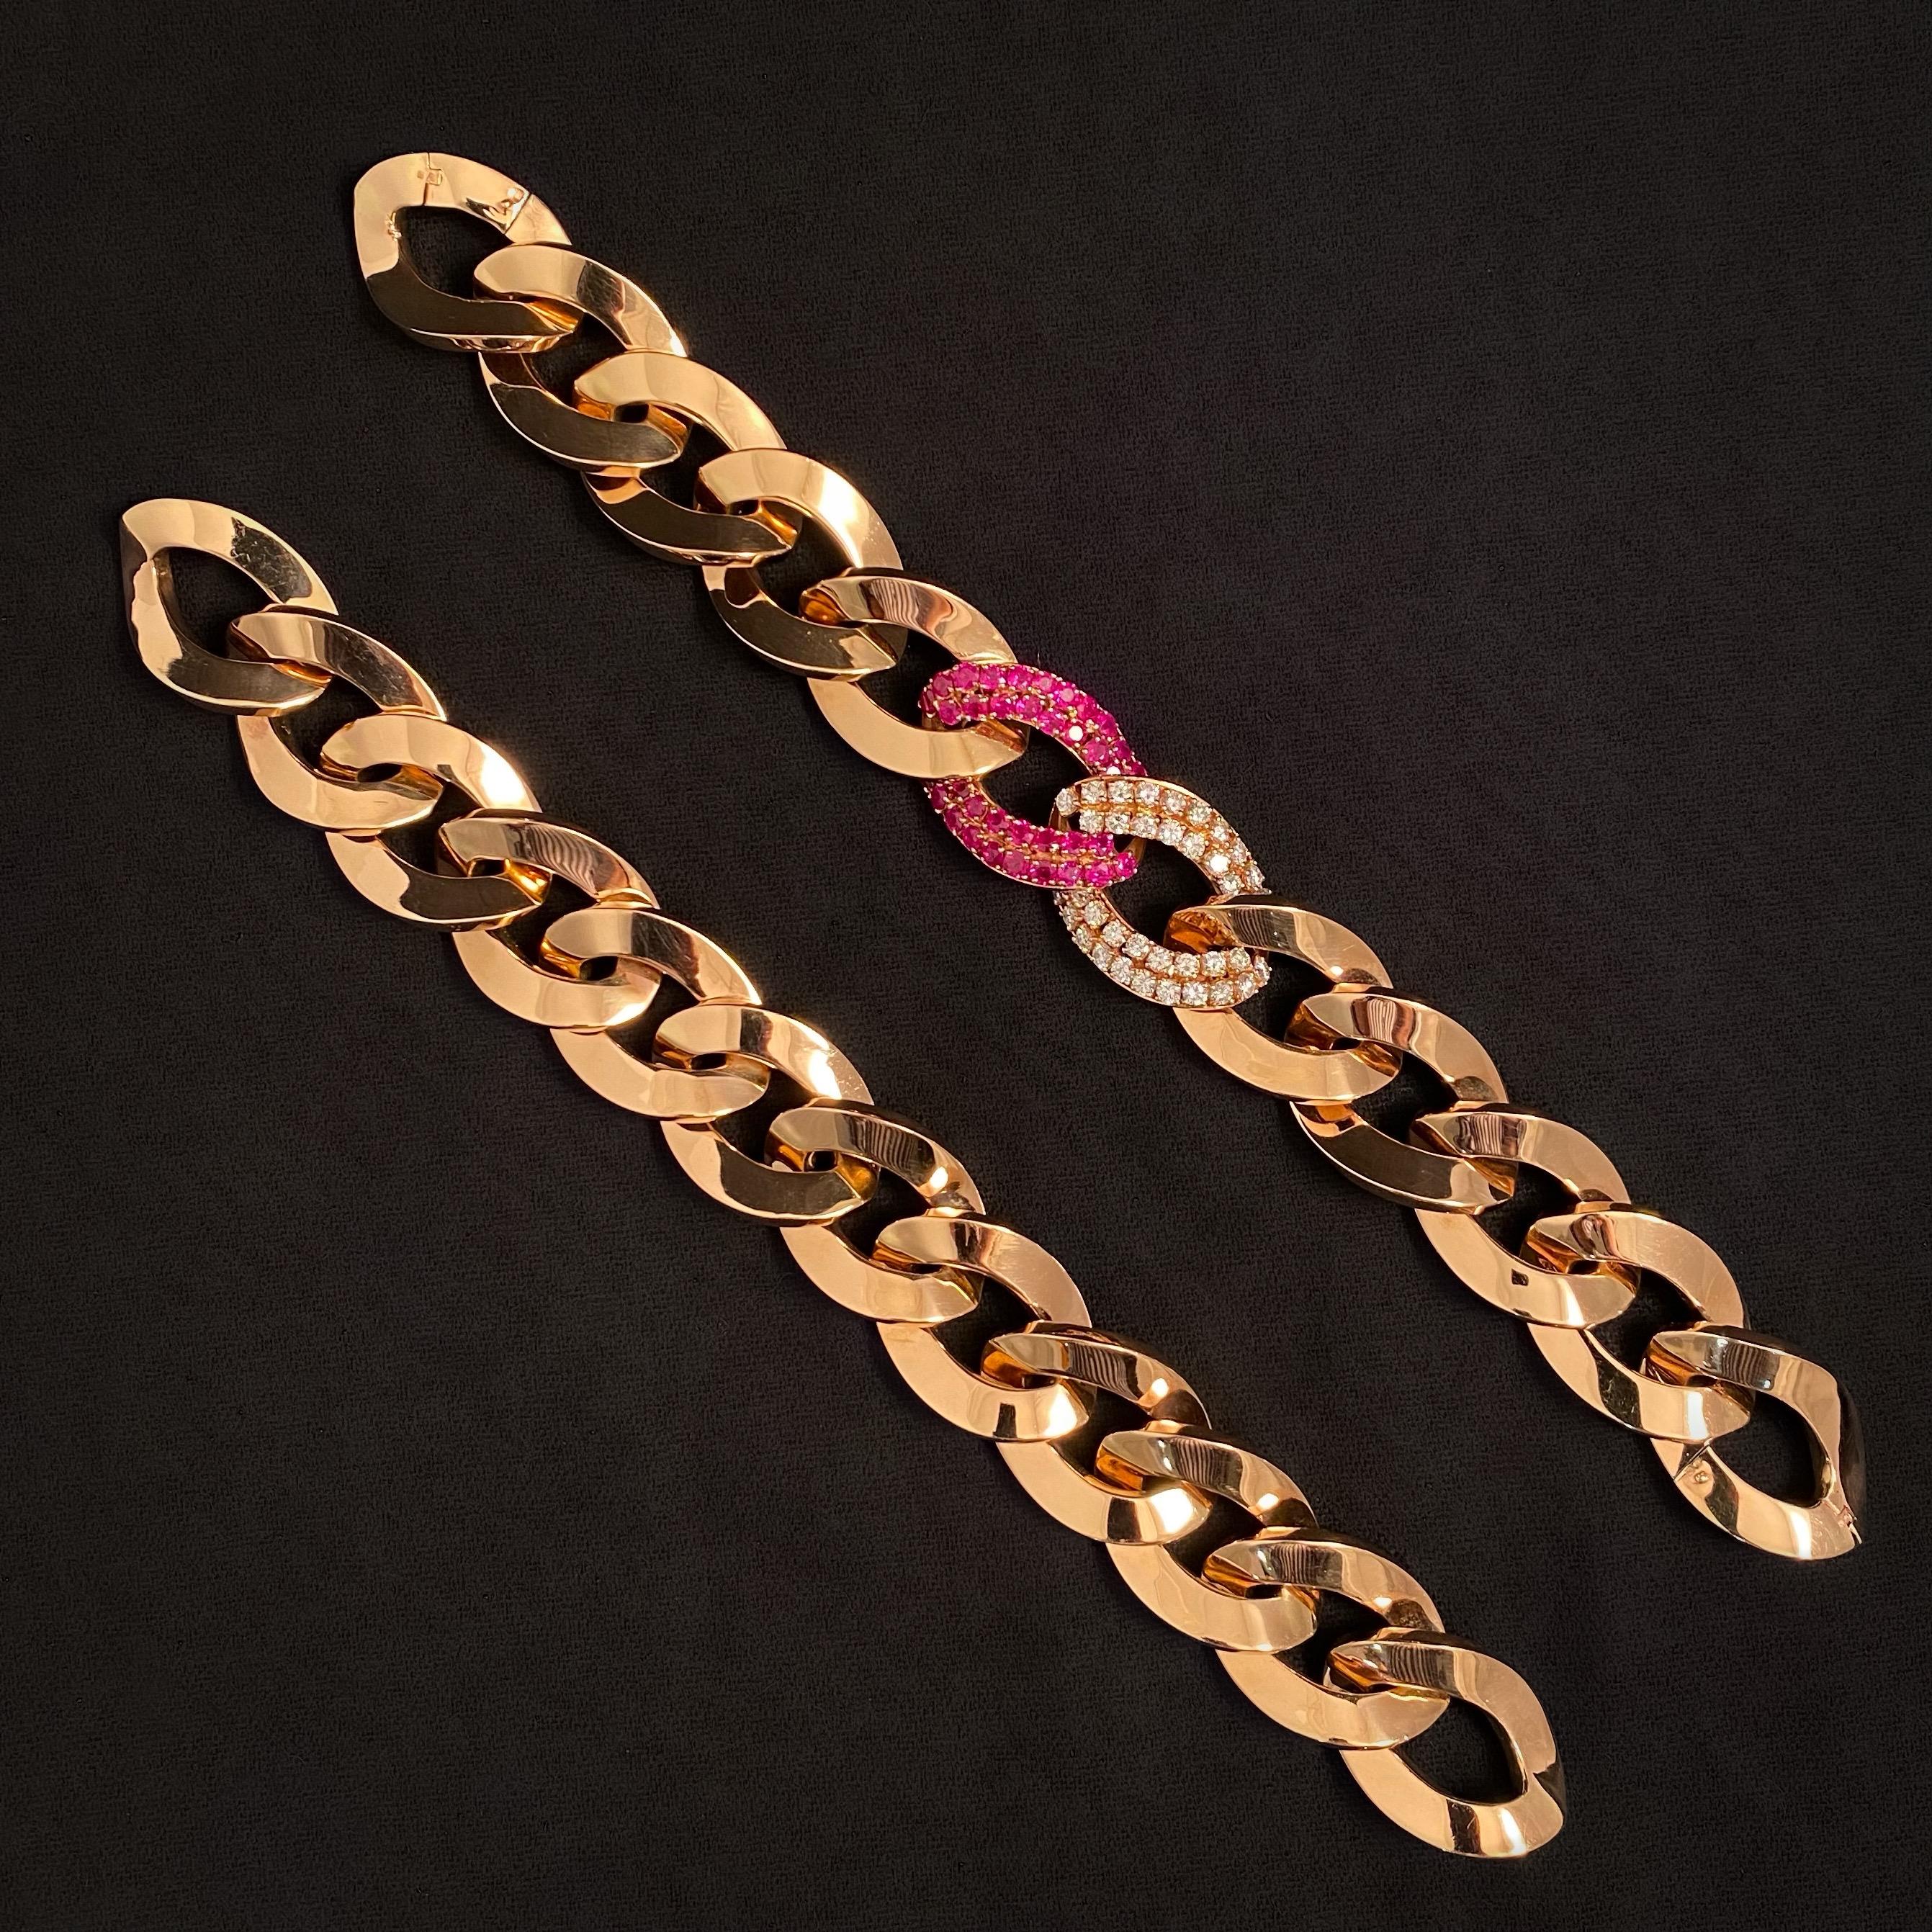 Fani Gioielli Vintage Rubin und Diamant Paar Armbänder, die in eine Halskette umgewandelt werden können, in 18 Karat Roségold, mit Provenienz, Italien, um 2000. Das Collier ist als breite Panzerkette gestaltet, wobei ein Glied mit 39 Rubinen im